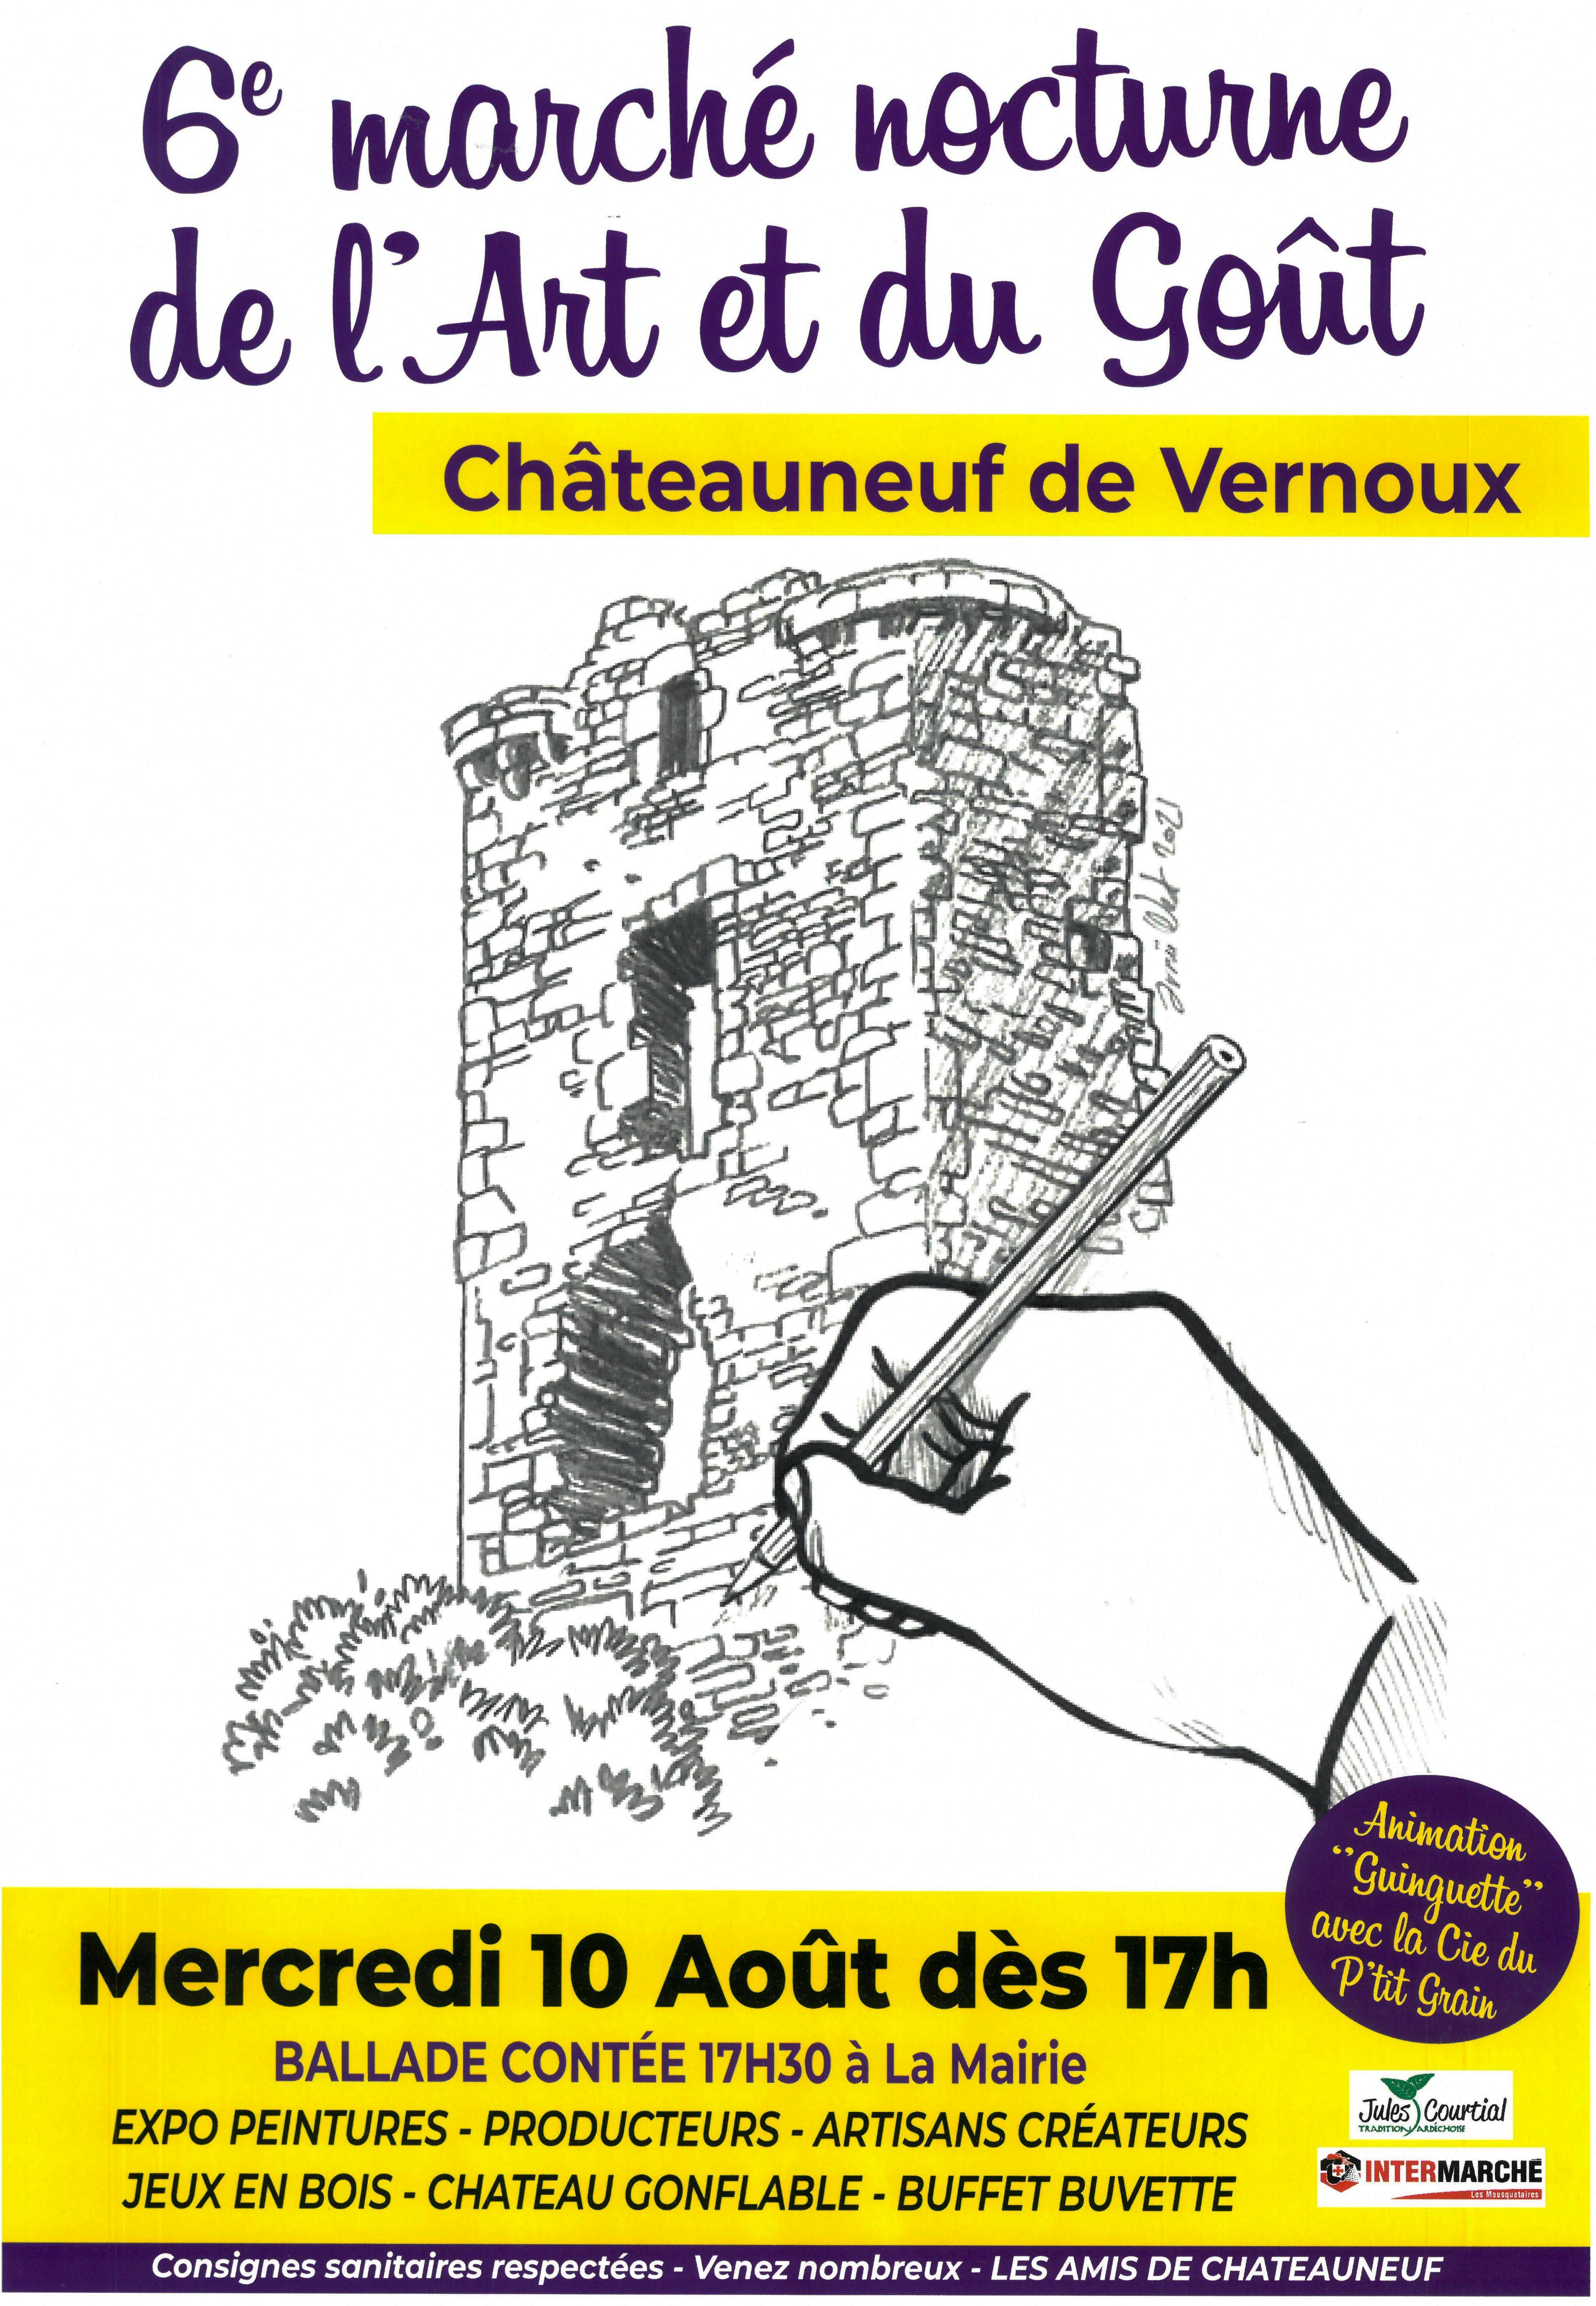 Events…Put it in your diary : Marché nocturne de l'art et du goût (édition #6)